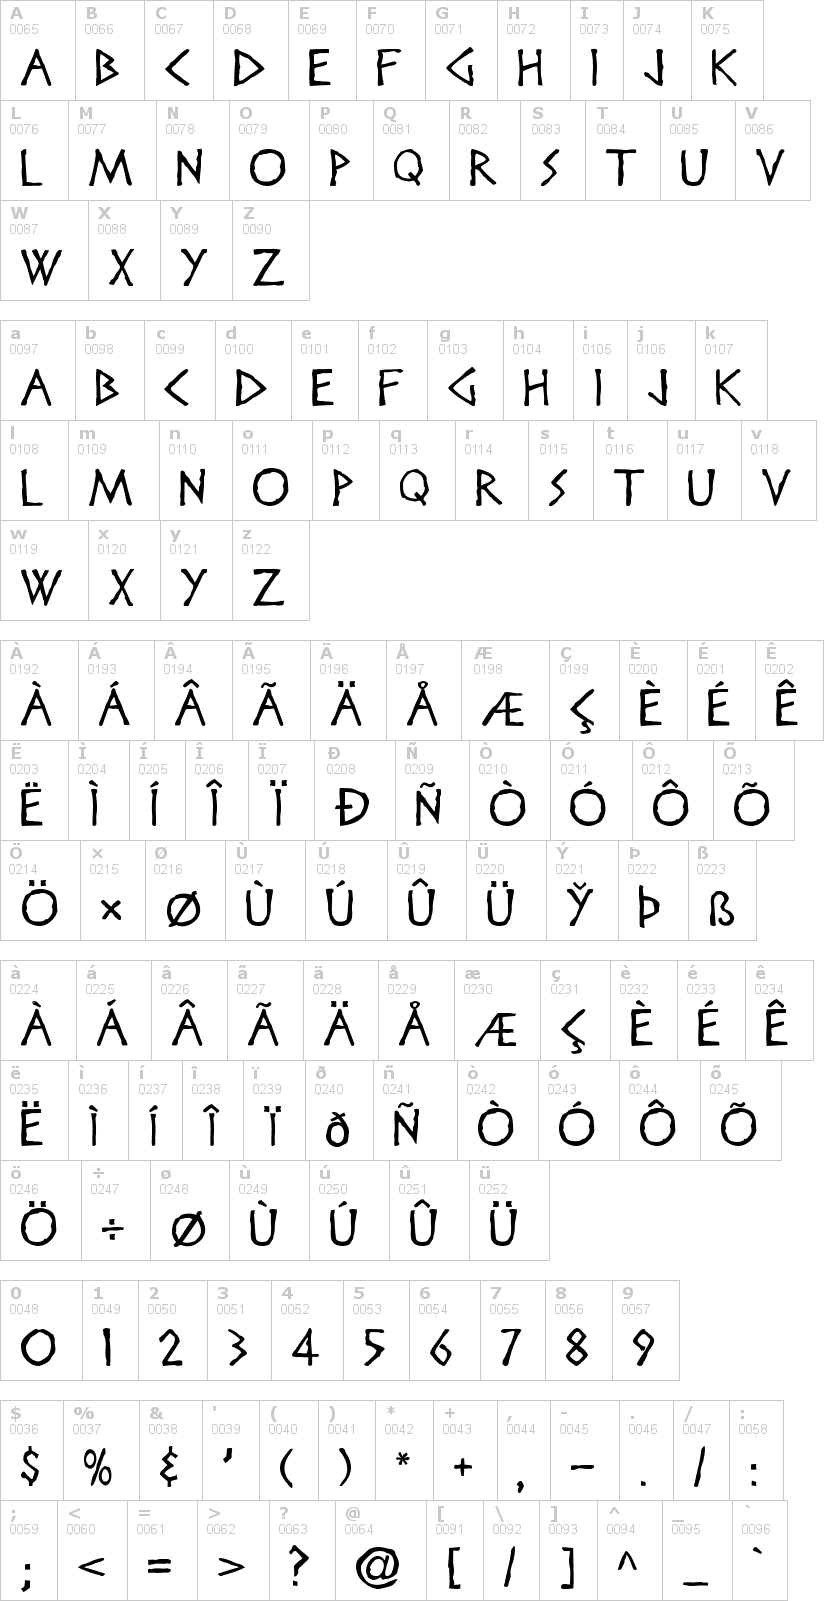 Lettere dell'alfabeto del font disney-heroic con le quali è possibile realizzare adesivi prespaziati